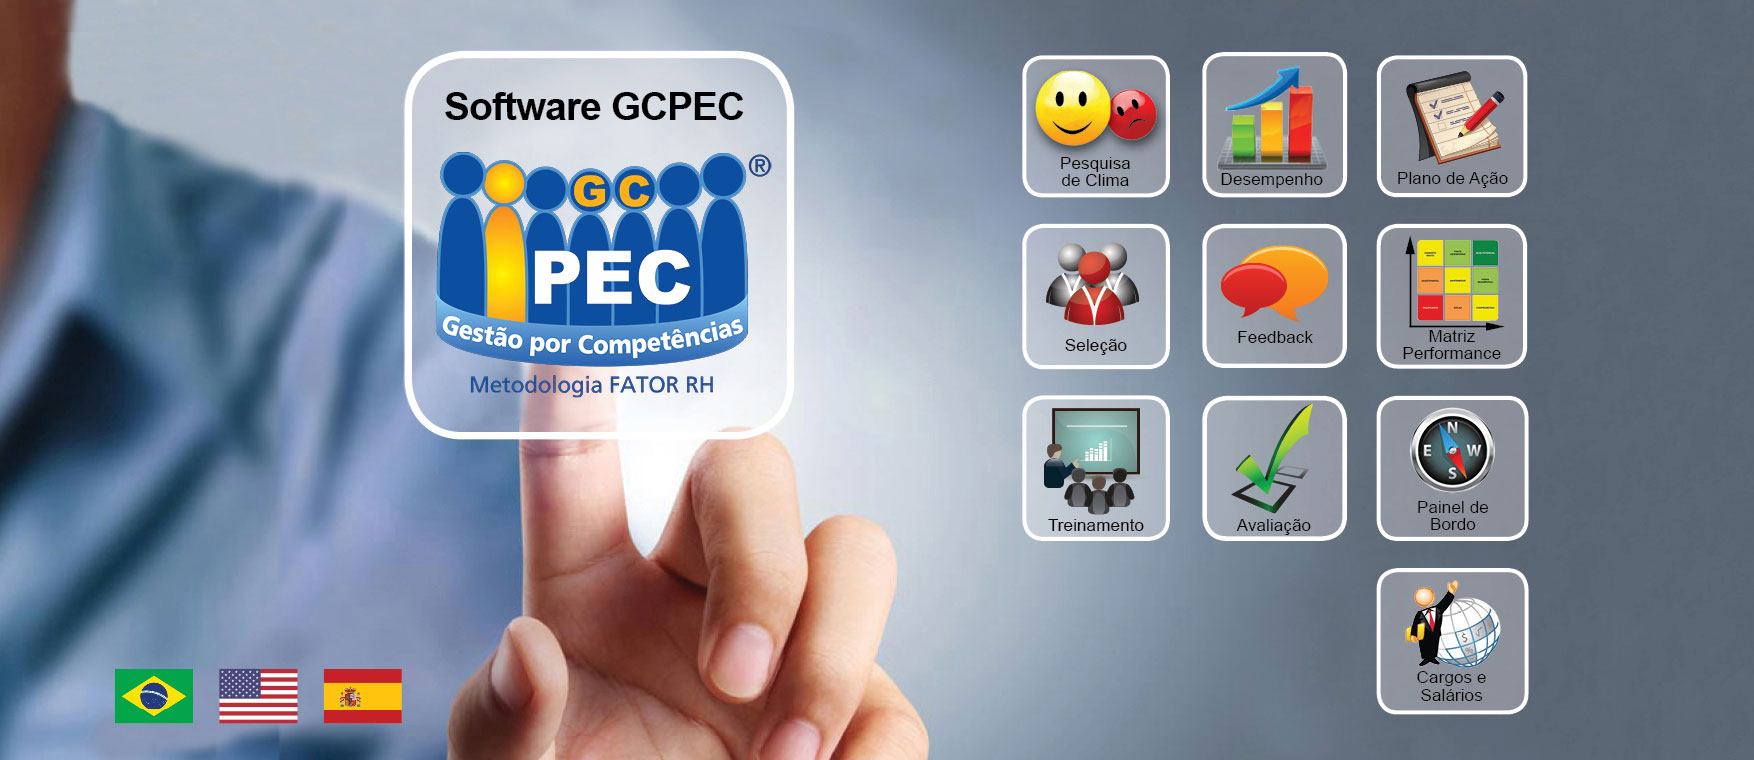 Software GCPEC - Gestão por Competências